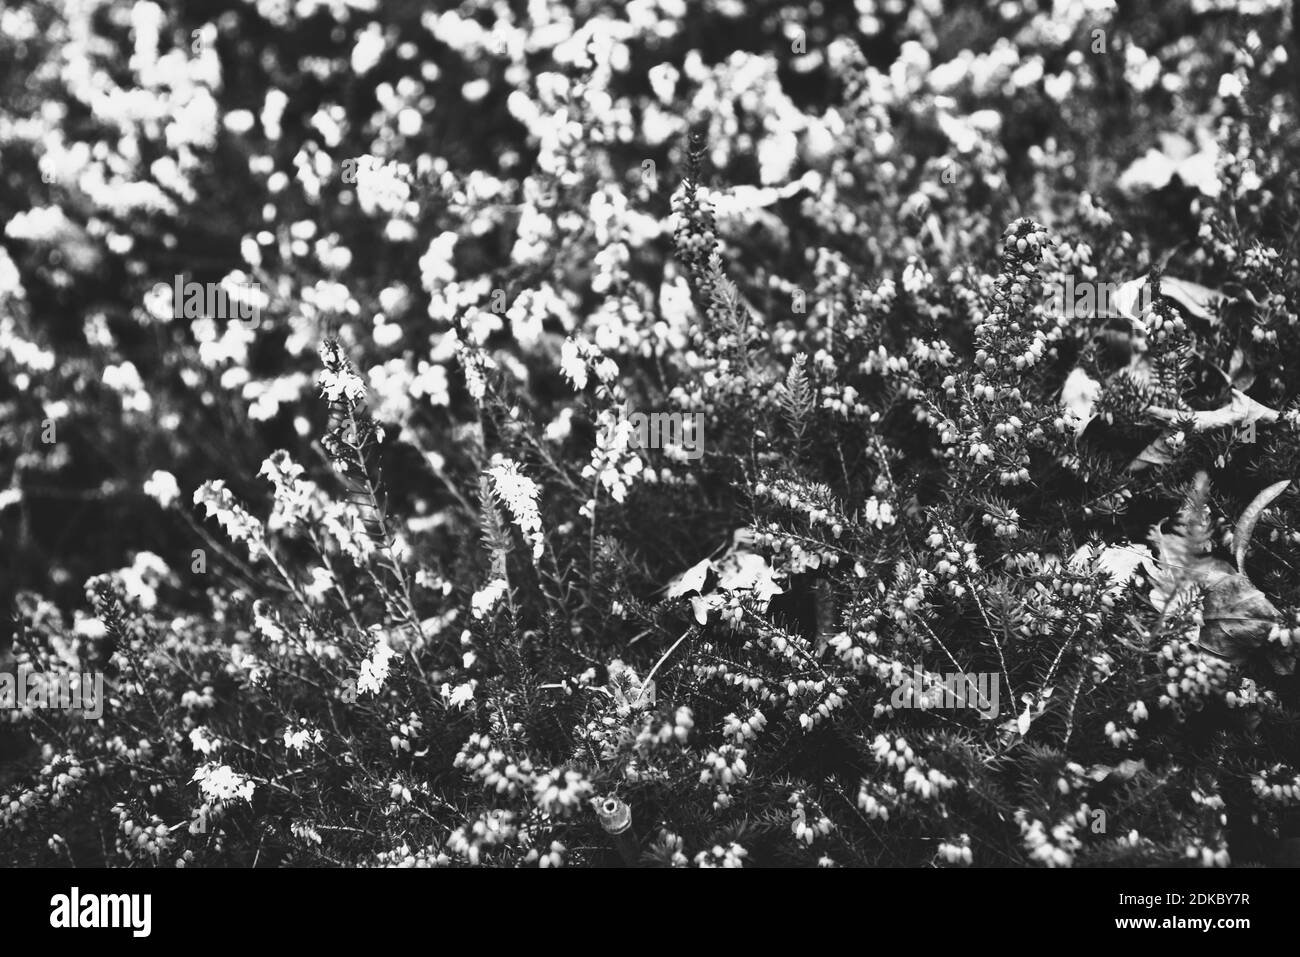 Heather. Fiori selvatici bagnati con sfondo sbiadito di foglie autunnali. Fiori funebri, lutto, dolore, dolore concetti. Foto in bianco e nero. Foto Stock